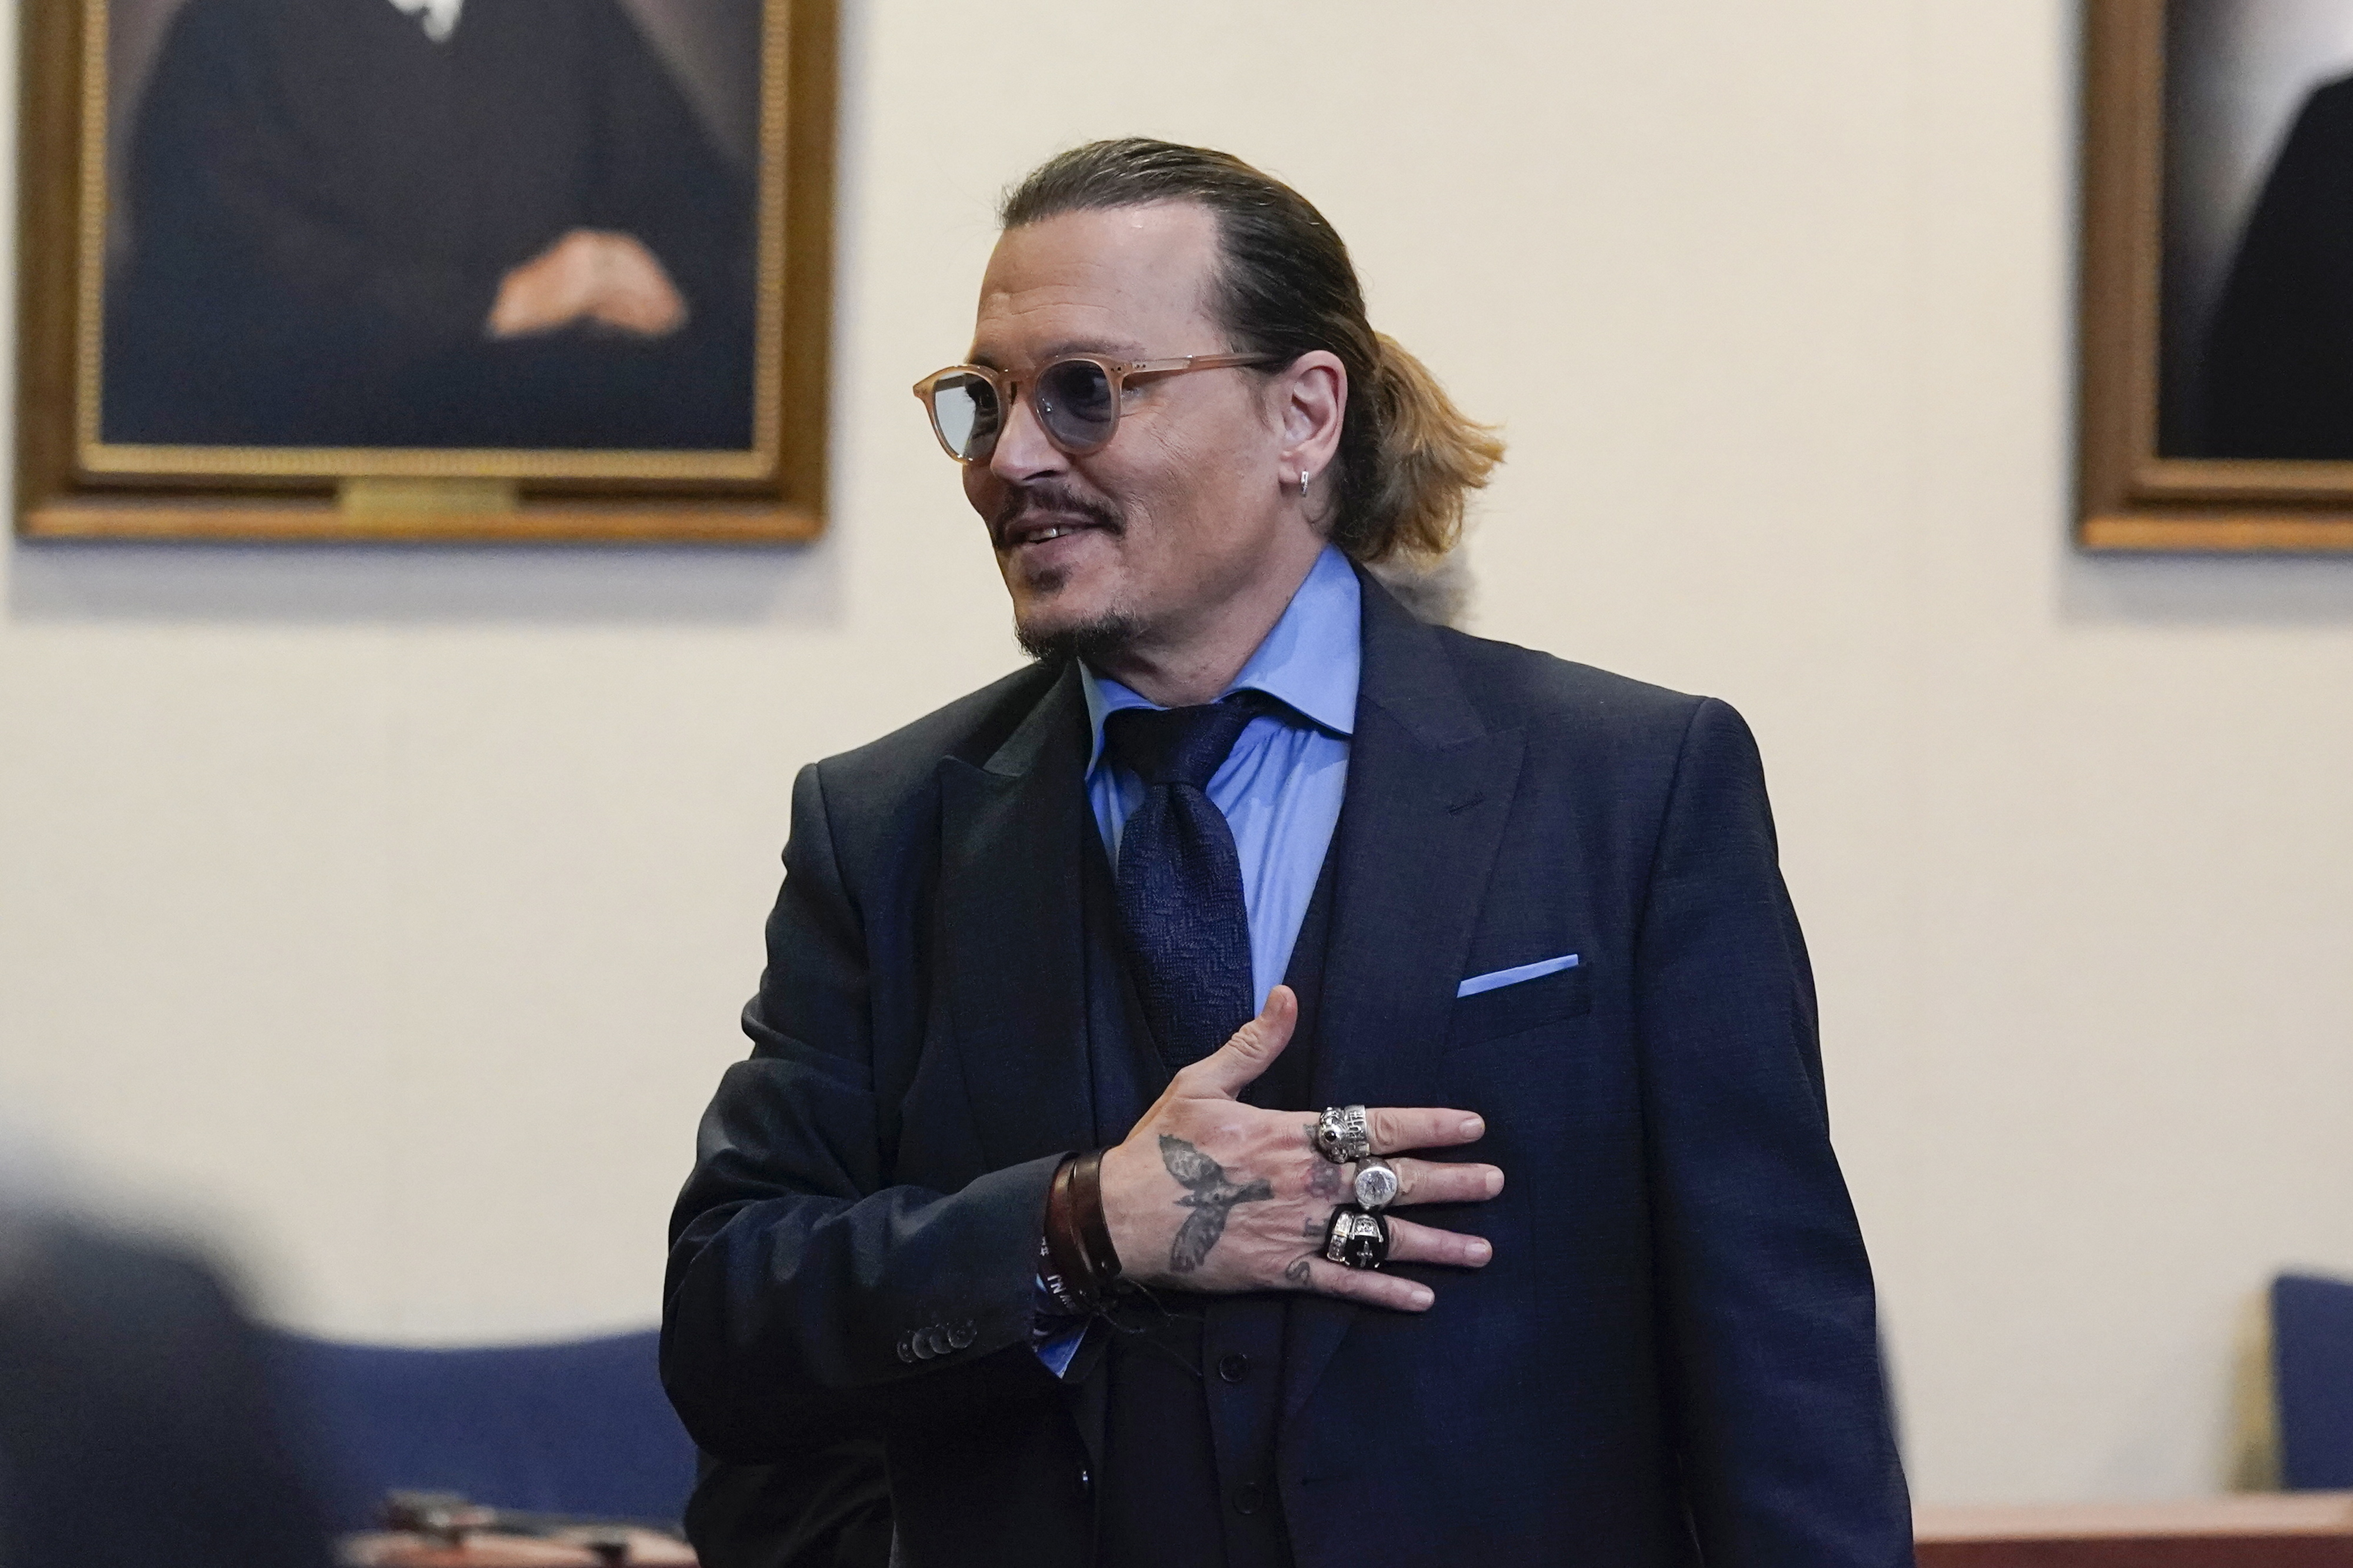 Jurados no caso Depp-Heard continuam deliberações após pergunta à